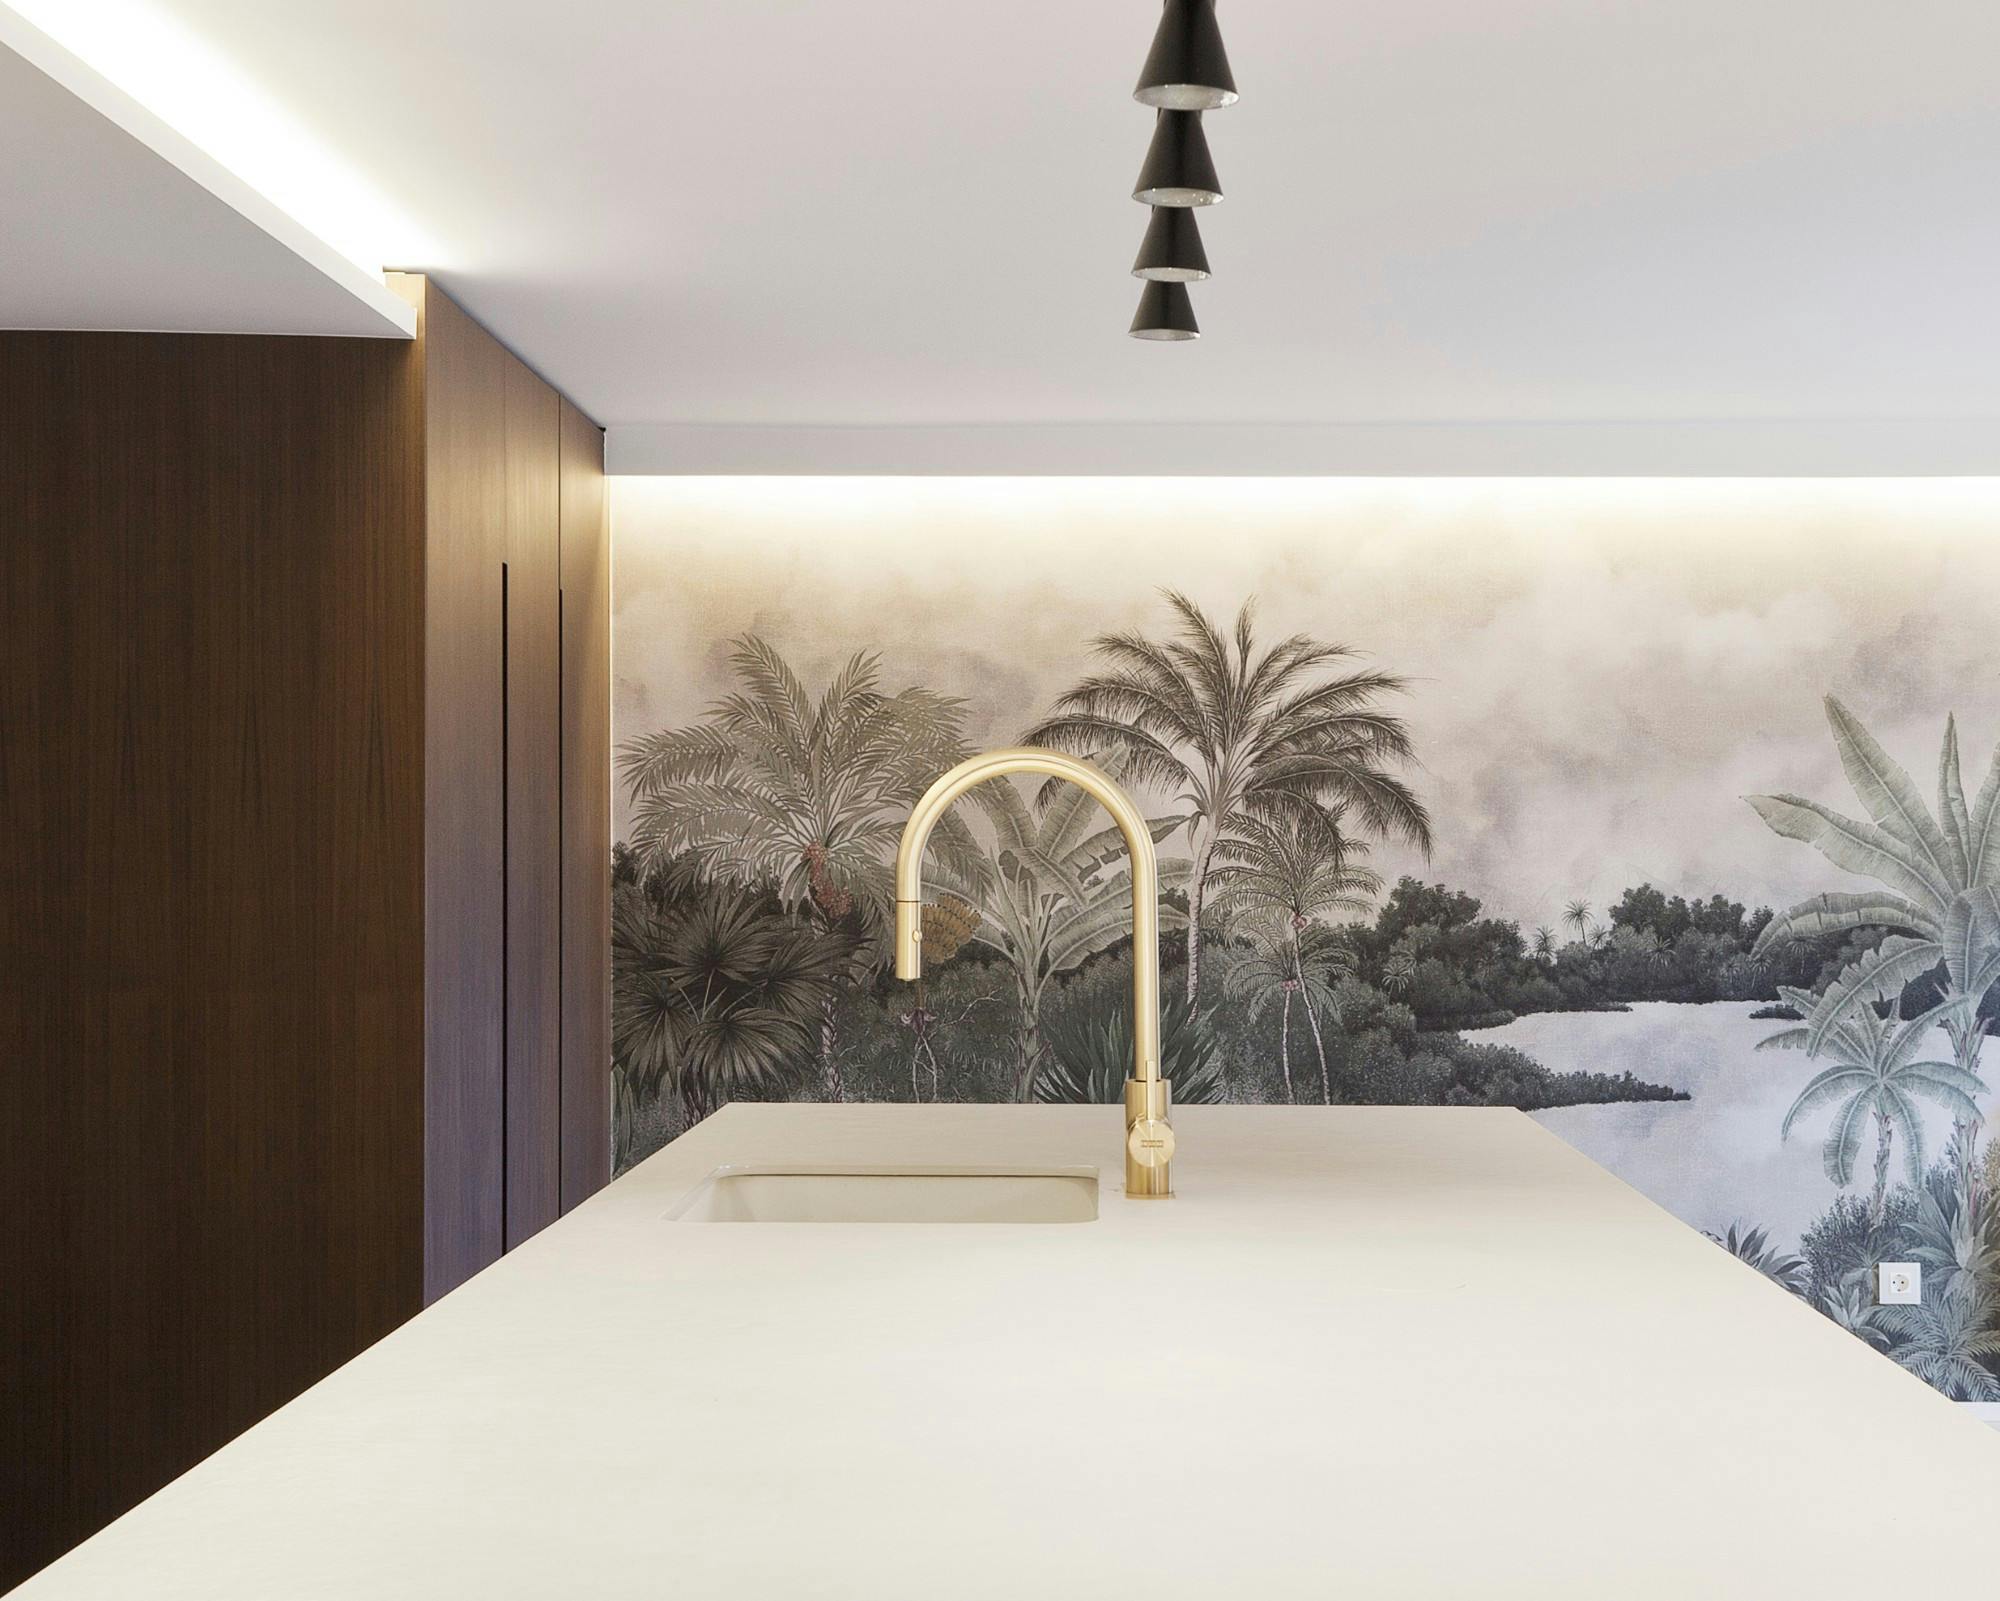 Imagem número 44 da actual secção de Cadenza Showroom, up to eight Dekton finishes to simulate the warmth of a home da Cosentino Portugal